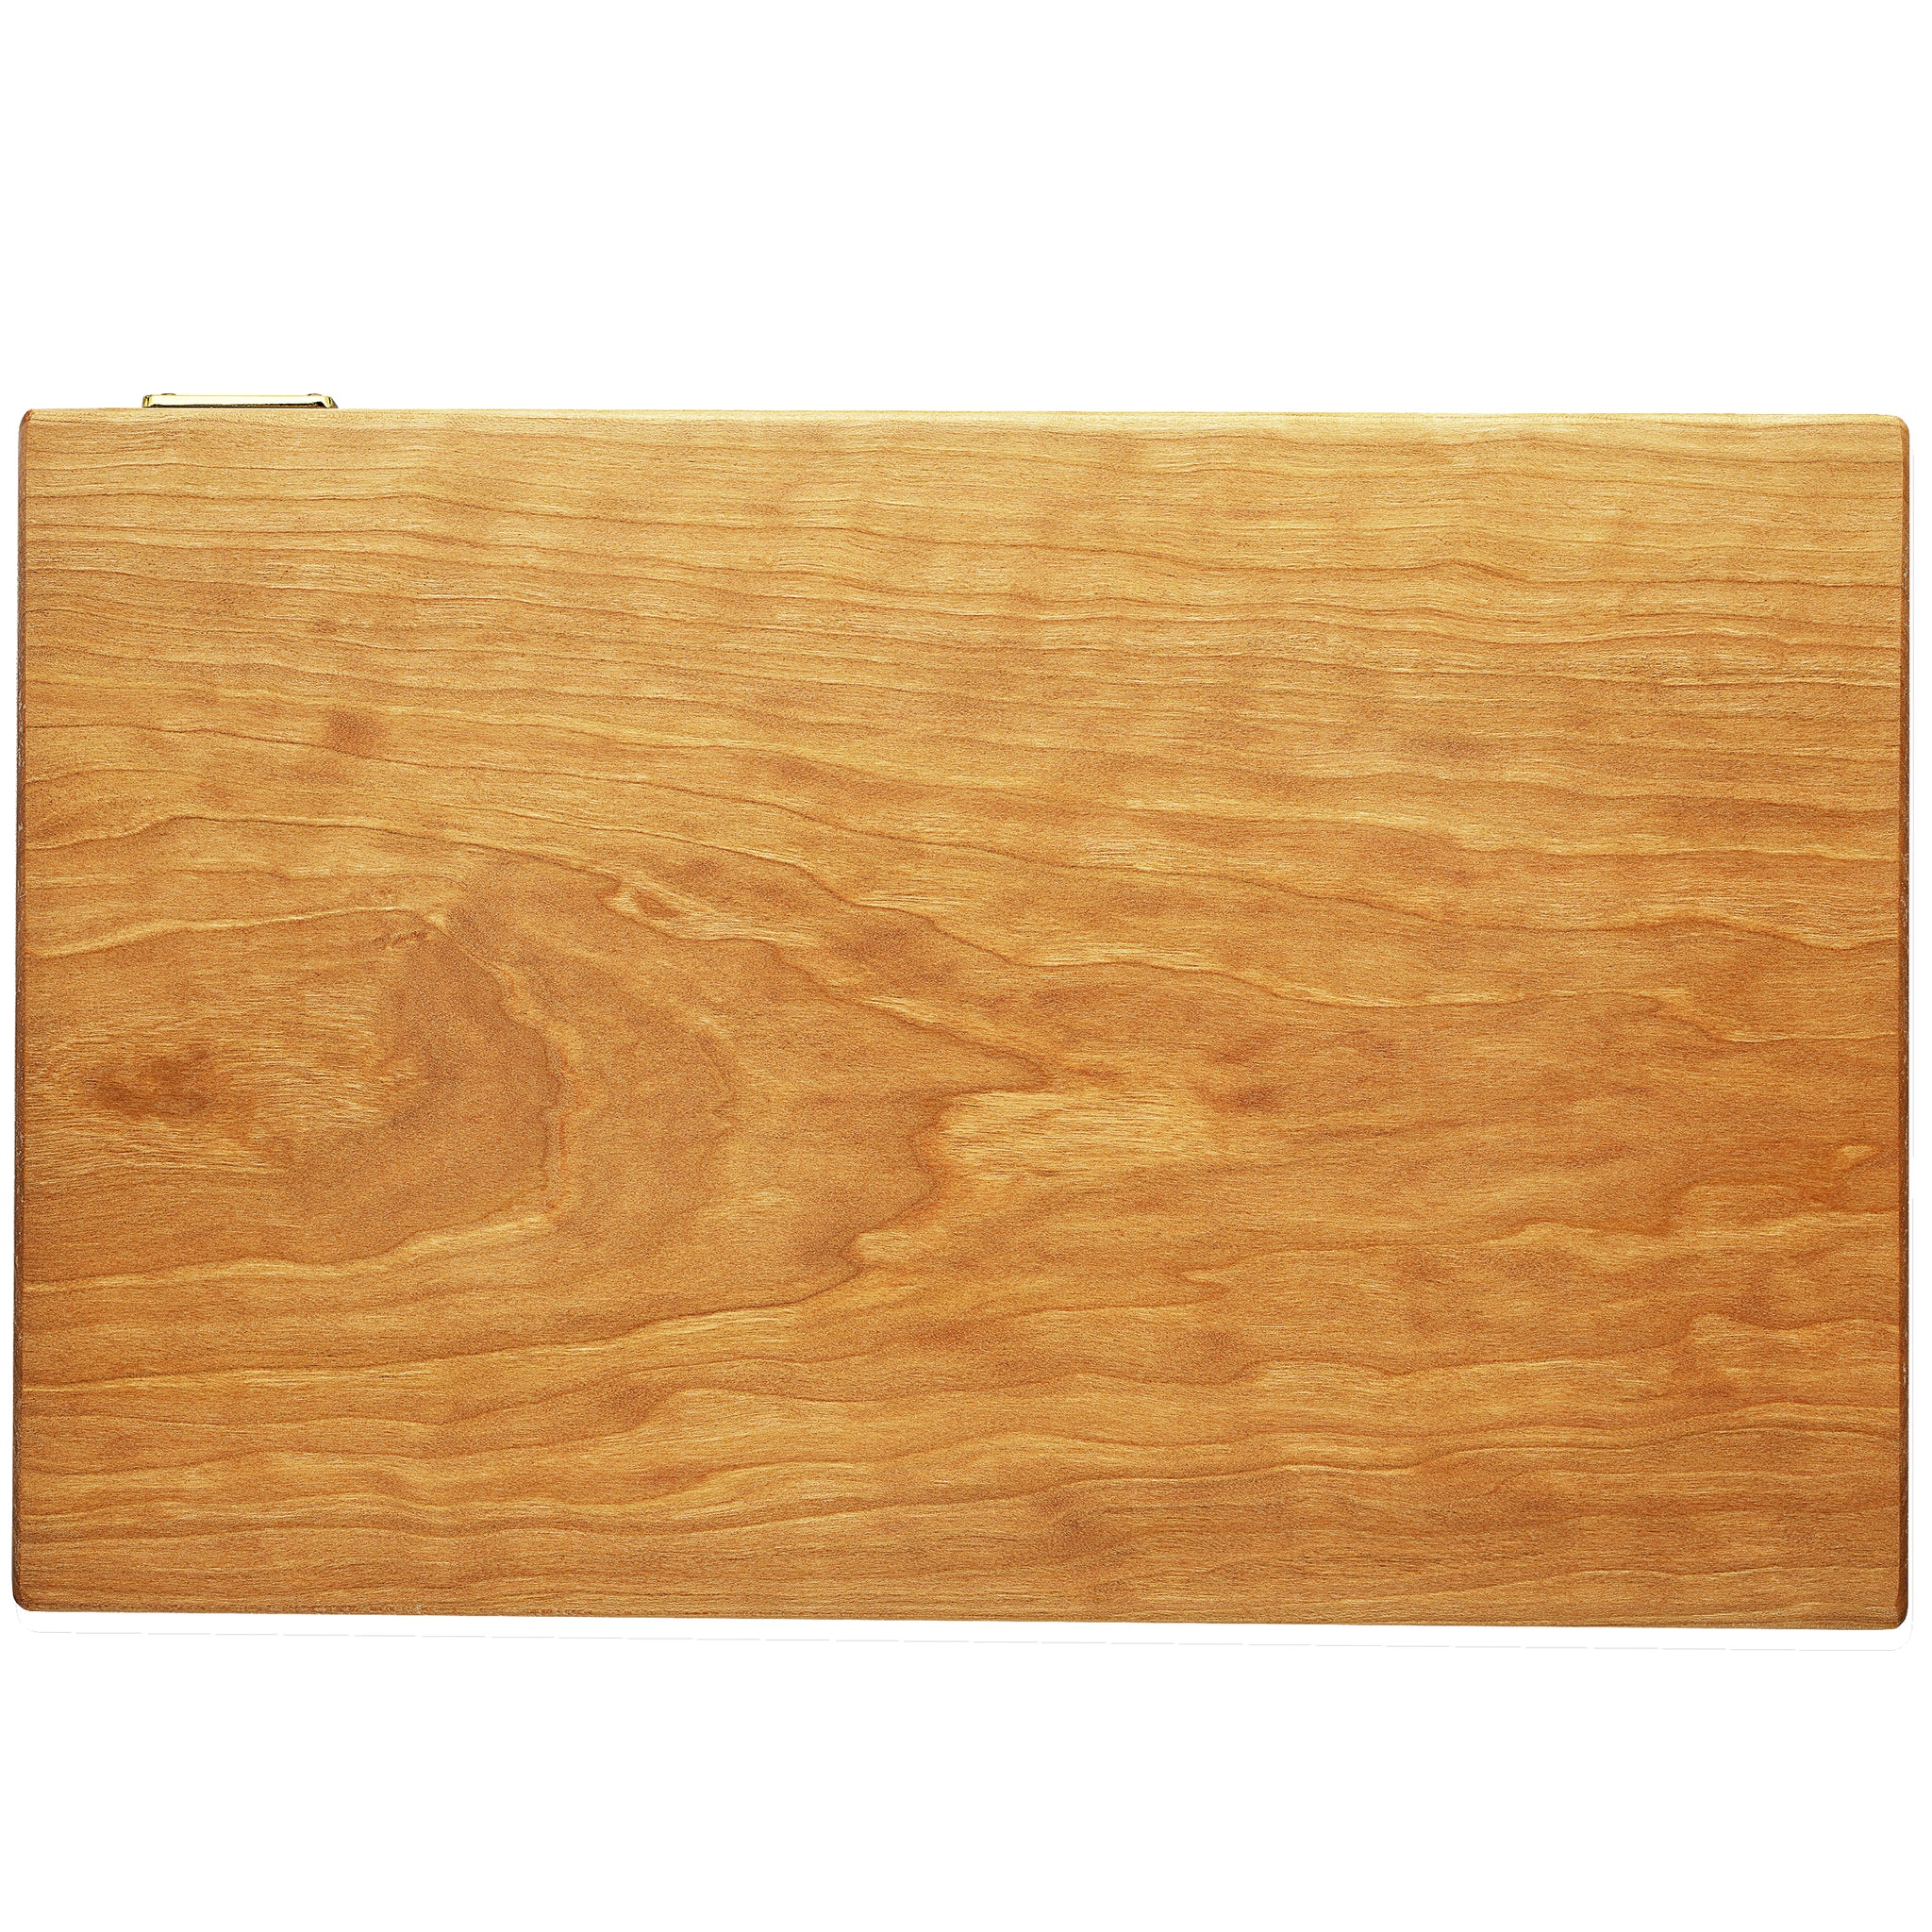 Reversible Cutting Board Prime II Cherry Wood Edge Grain Handmade 15" x 10" x 1-1/4"